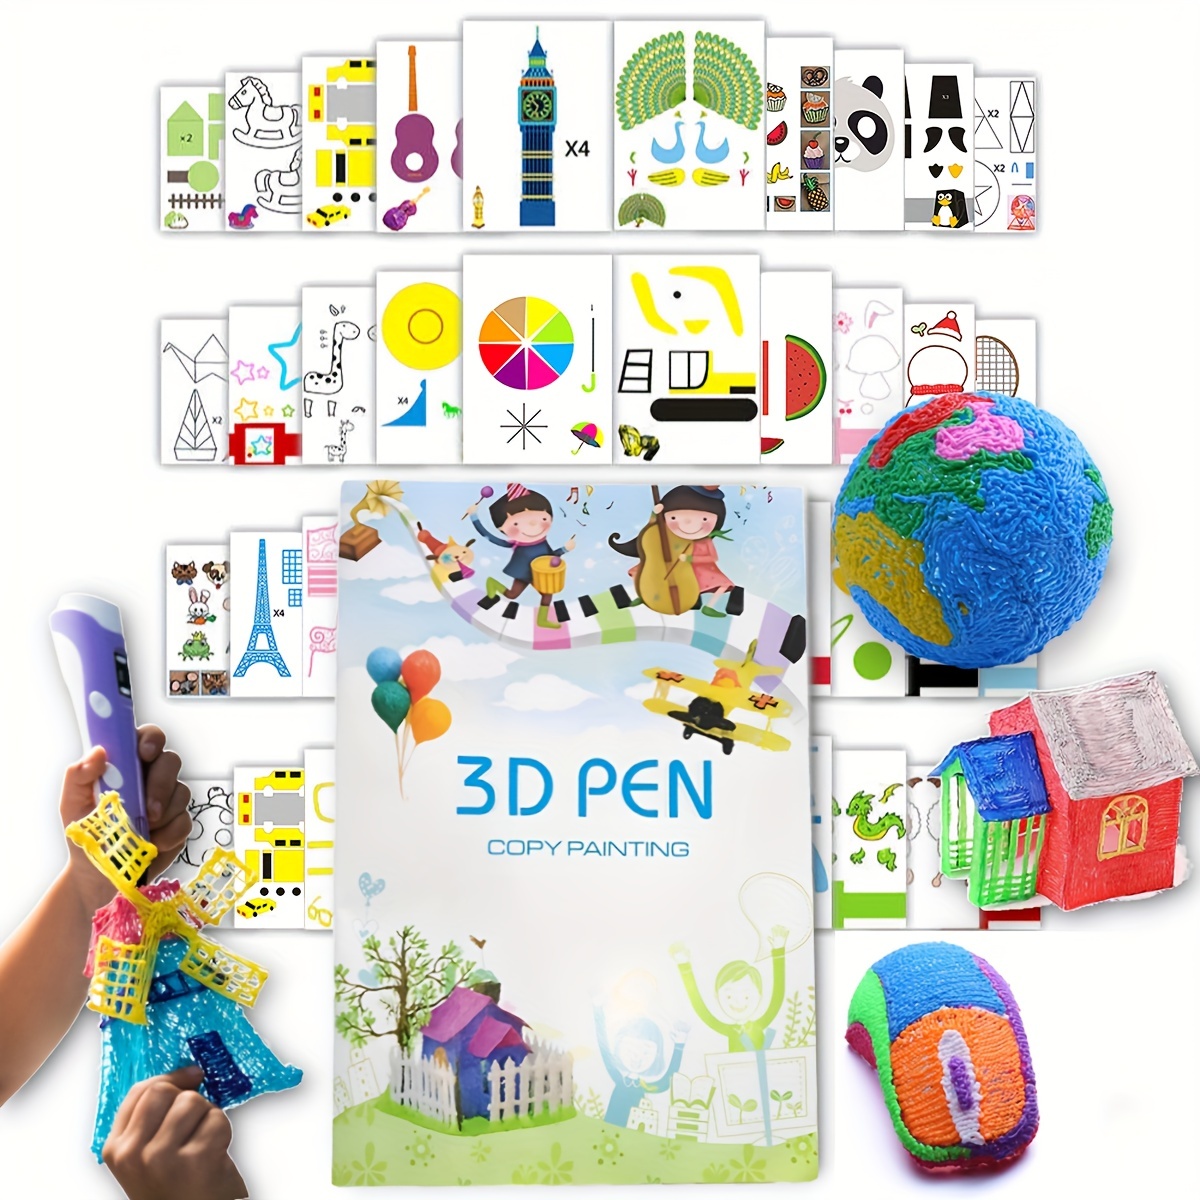 Filamento Speciale Per Penna Di Stampa 3D Filamento Trasparente Speciale;  Filamento 3D Creativo Fai-da-te, Regalo Per Bambini - Temu Italy